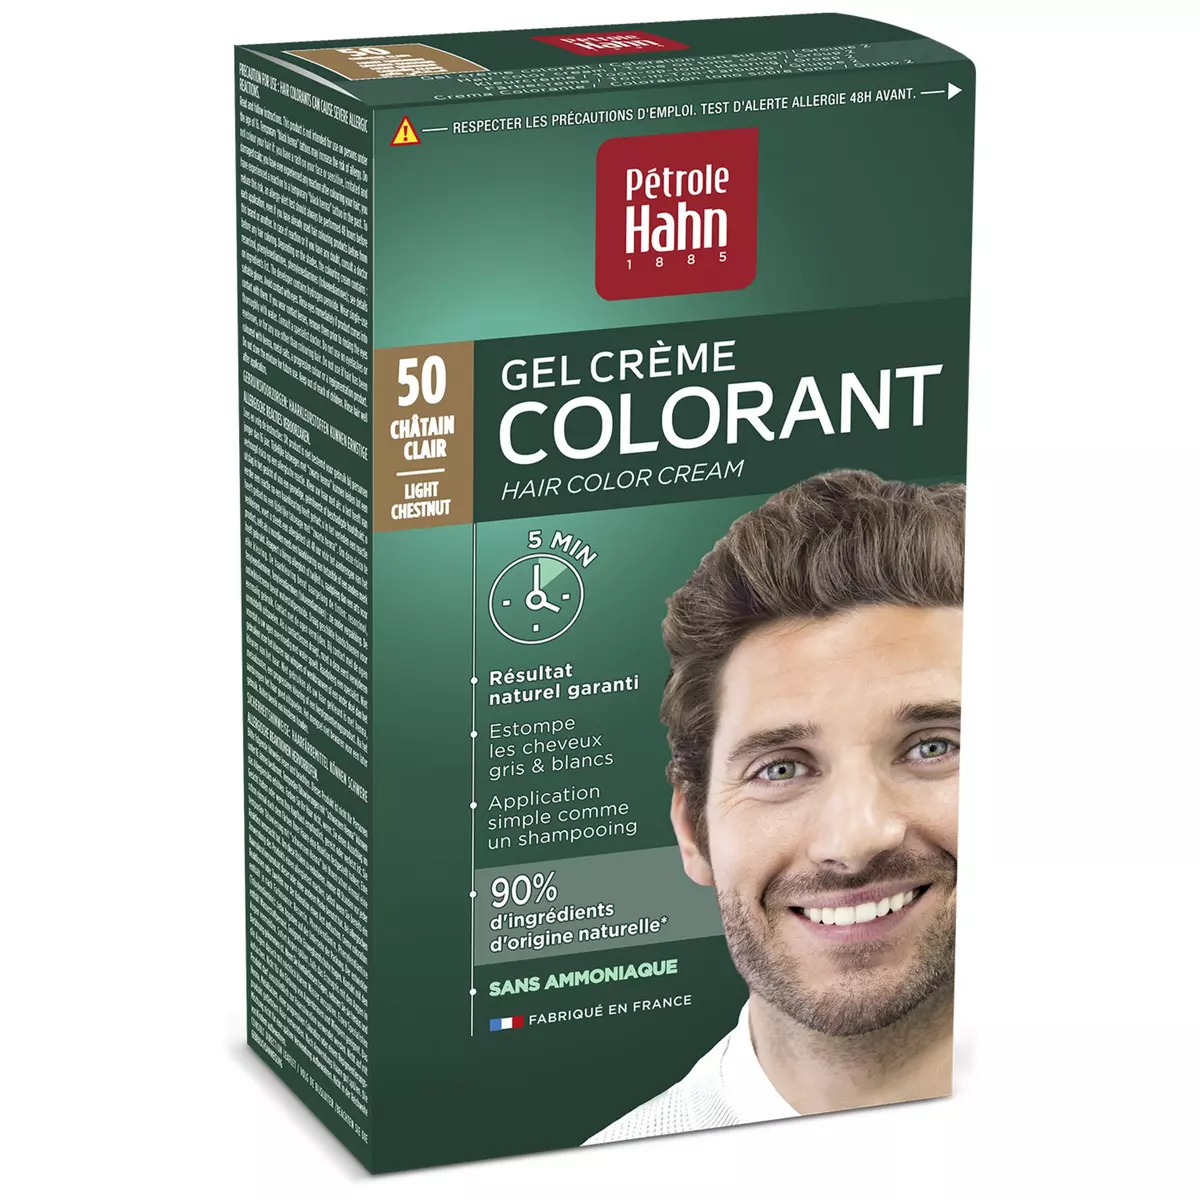 PETROLE HAHN Gel crème colorant 50 châtain clair 1 kit